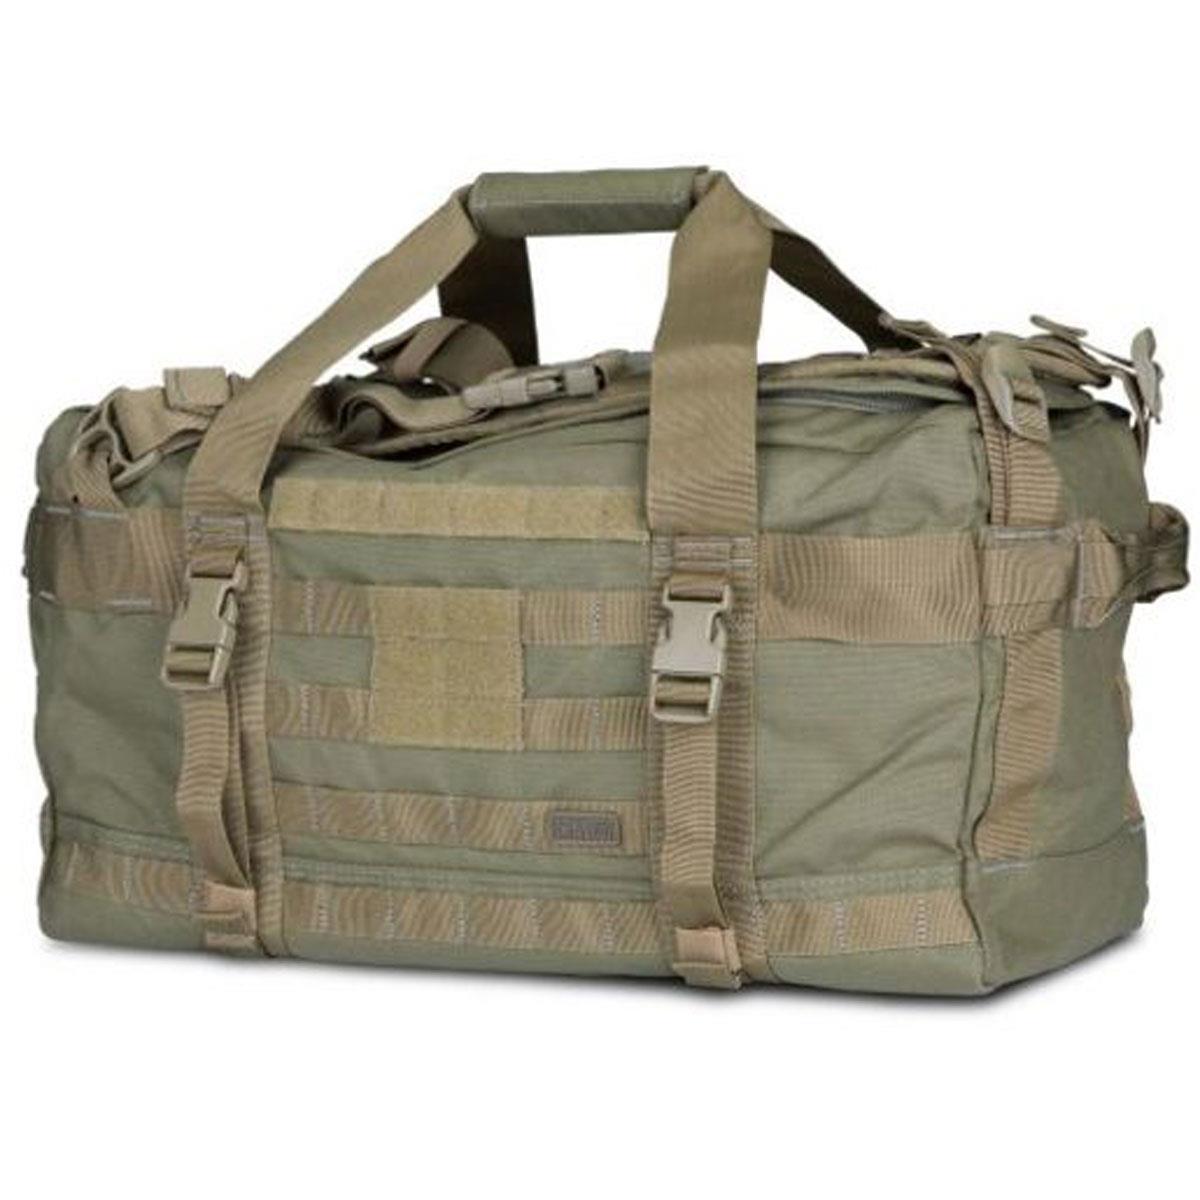 5.11 Tactical RUSH LBD Mike Duffel Bag, Sandstone -  56293-328-1 SZ